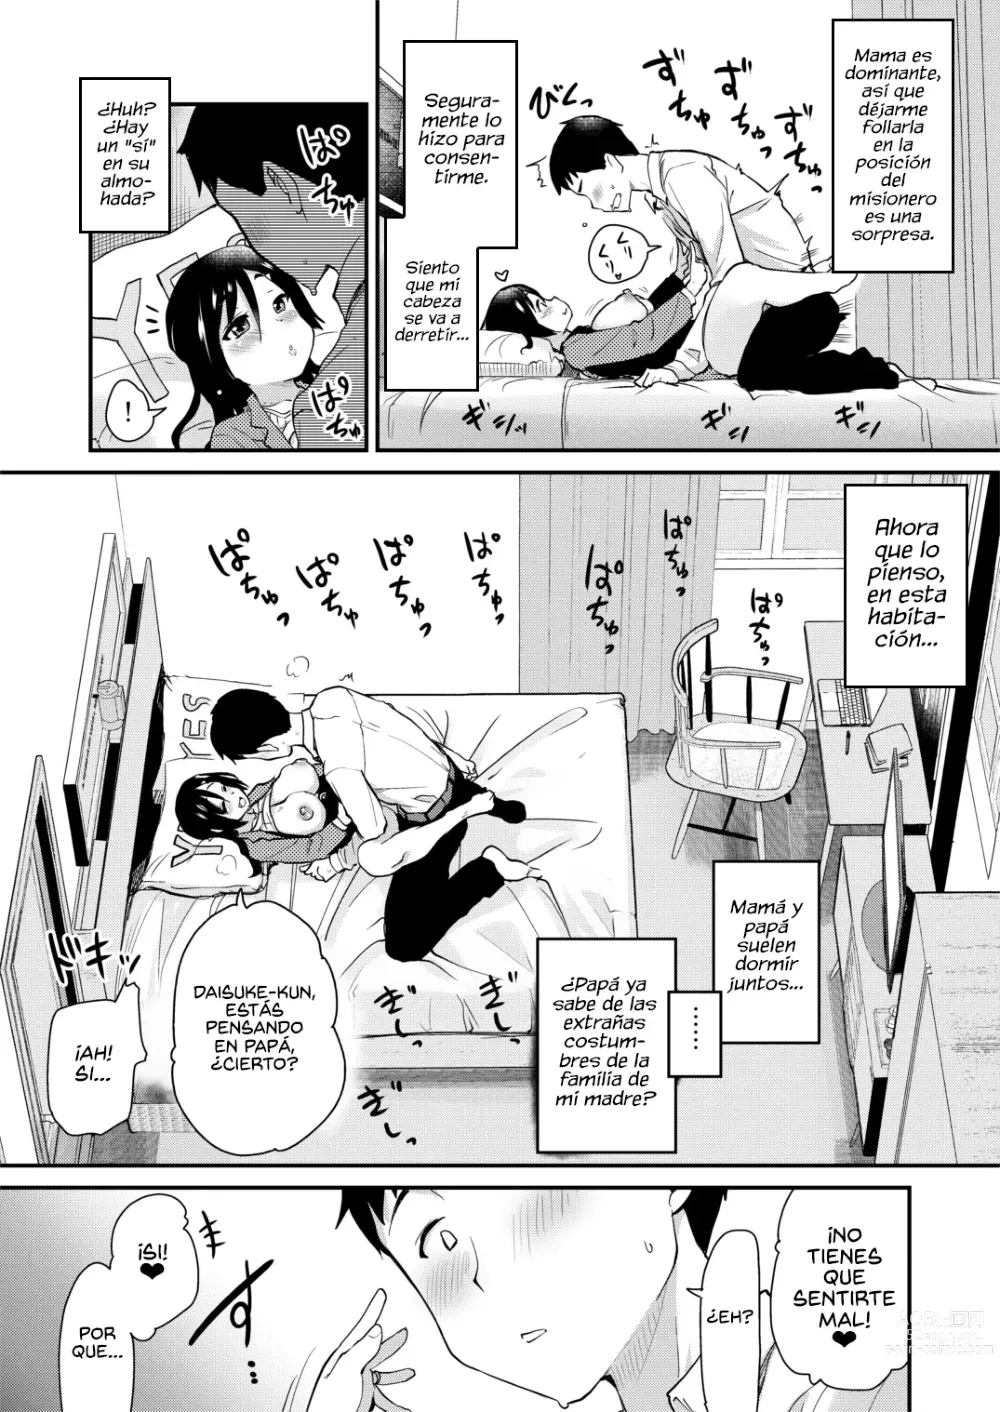 Page 24 of doujinshi La Vida Cotidiana de una Mamá Primeriza es Demasiado Erótica.